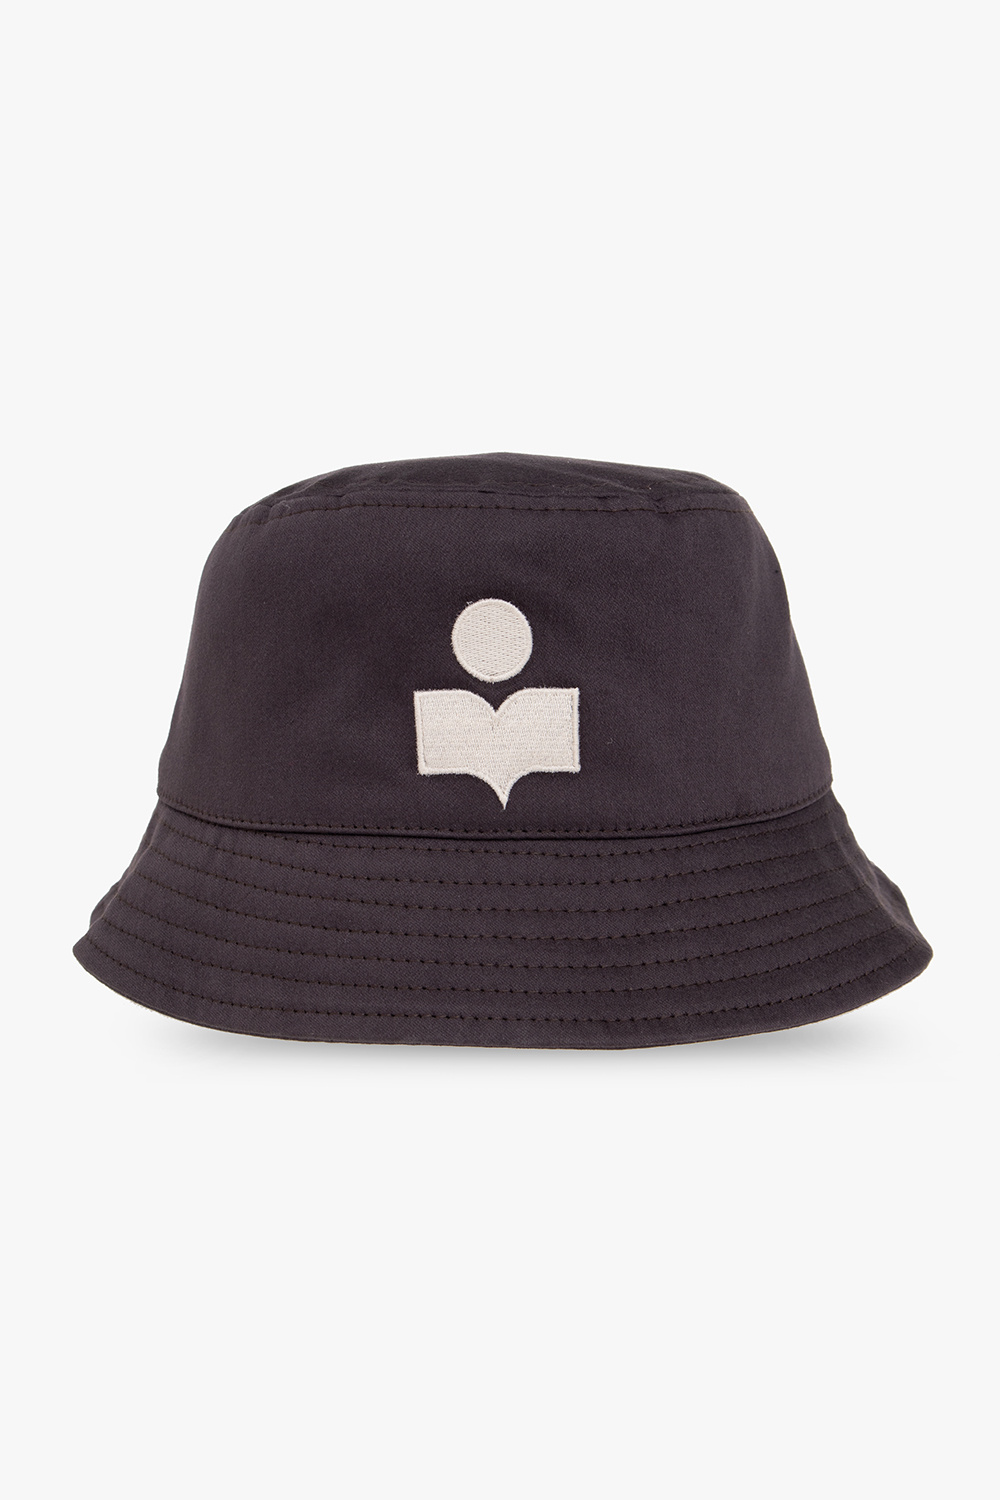 MARANT ‘Haleyh’ bucket hat